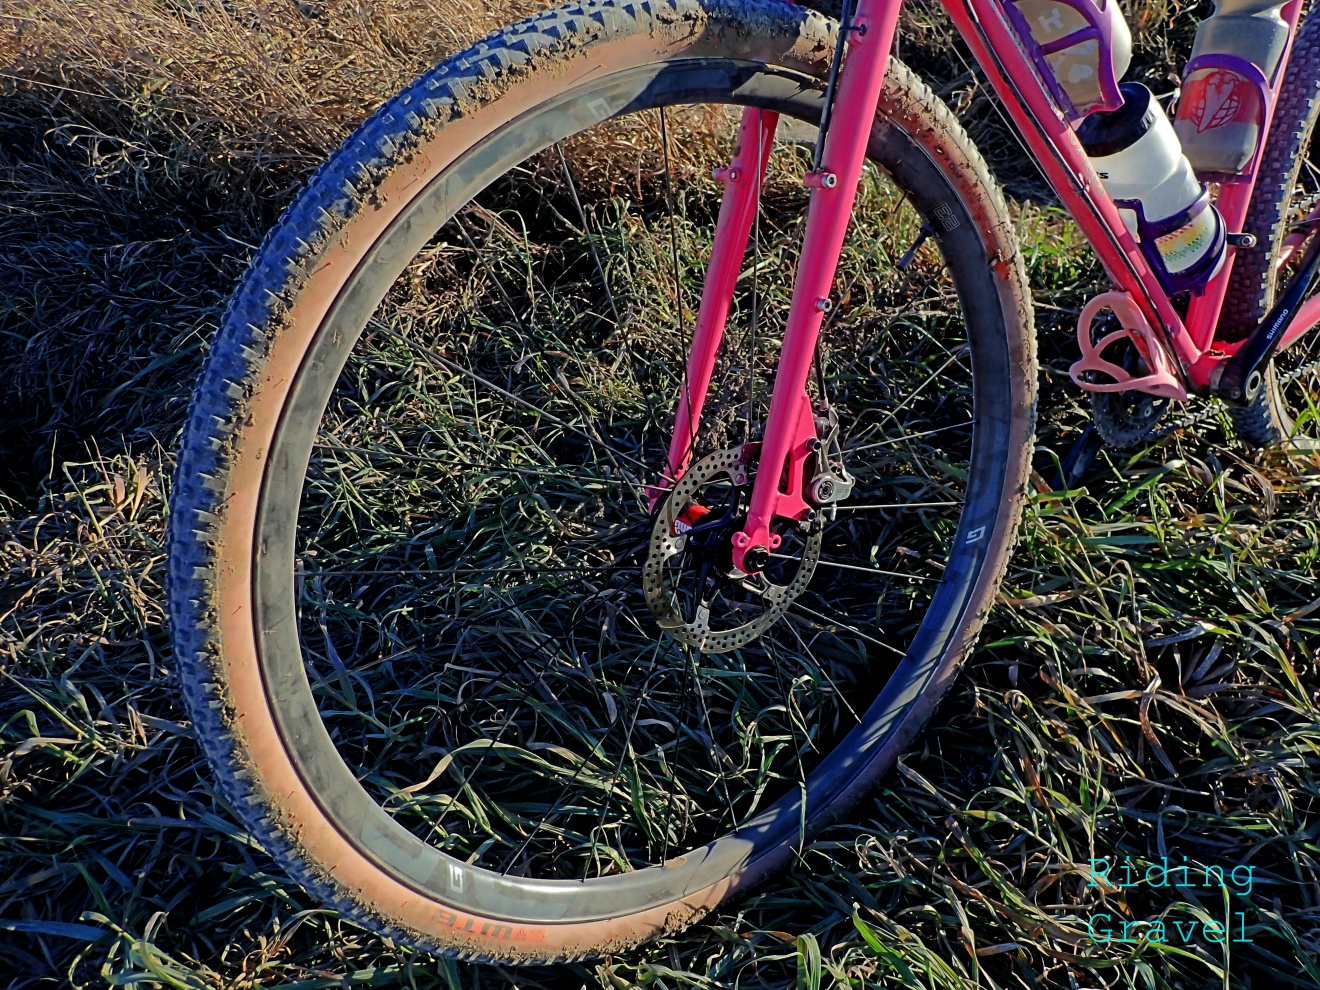 Dirt Road Bike Tire 27.5" New Terrene ELWOOD Tough 650B x 47c Gravel